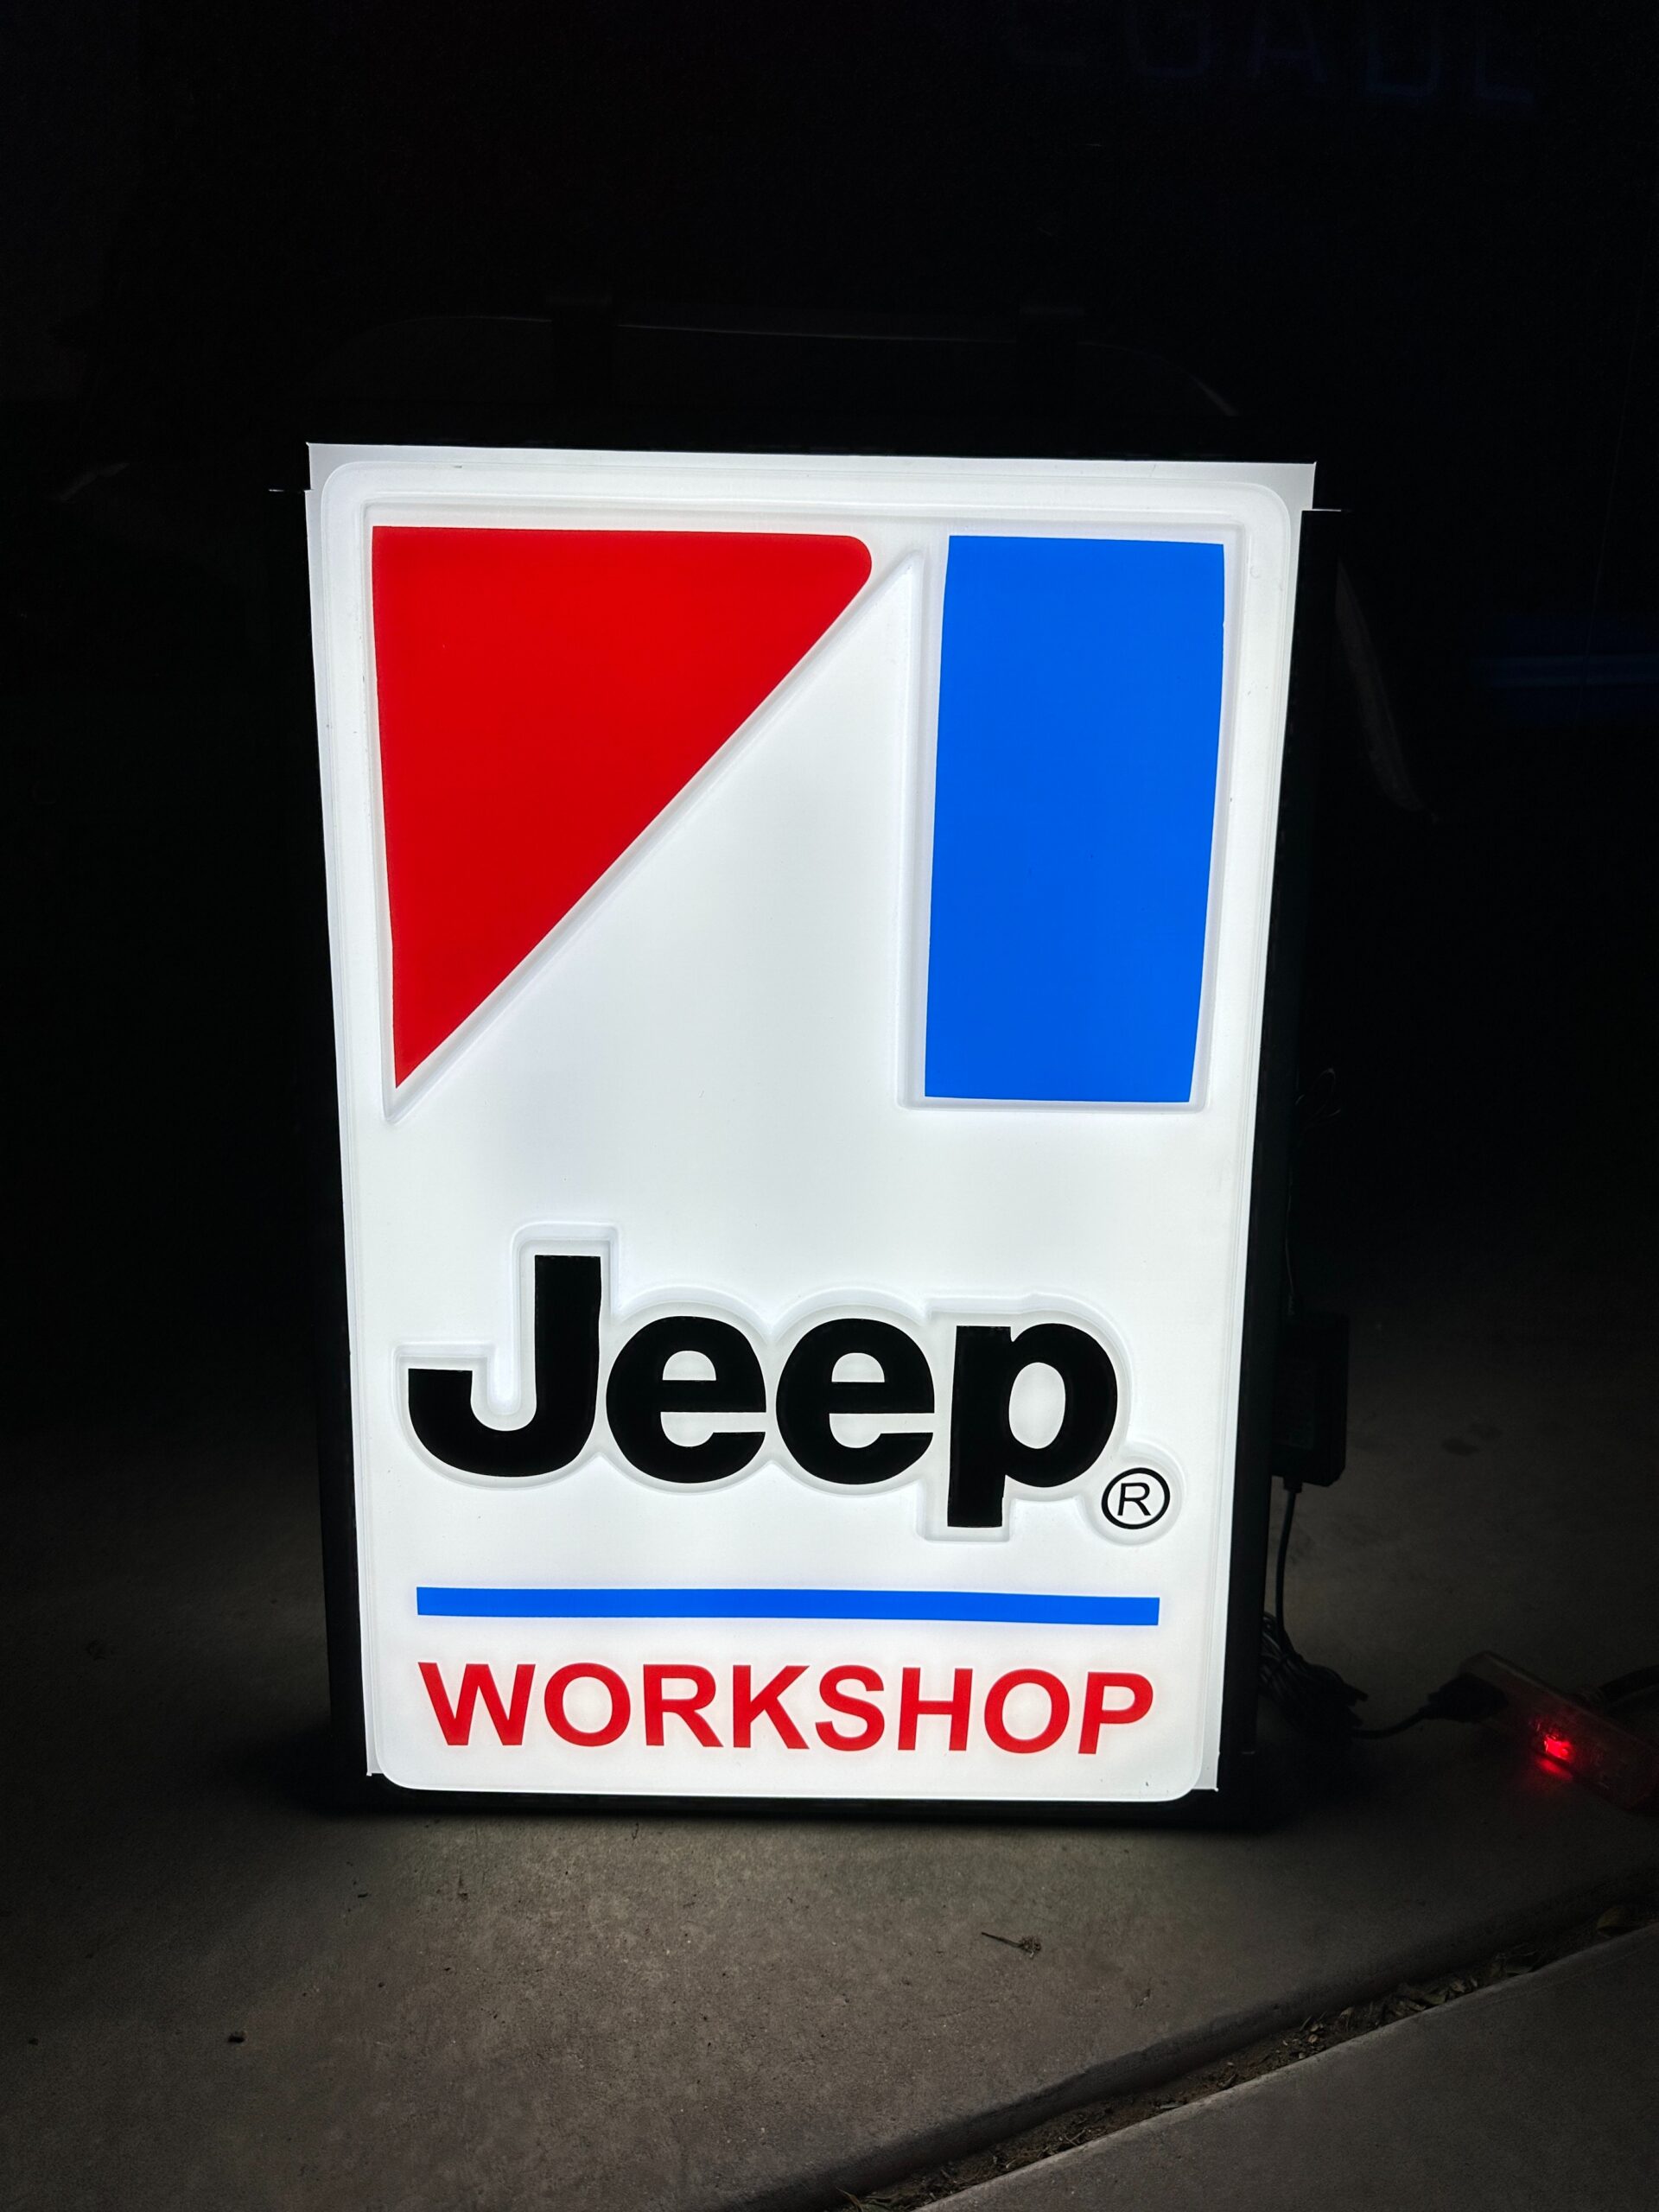 Rare AMC Jeep Workshop Backlit Sign